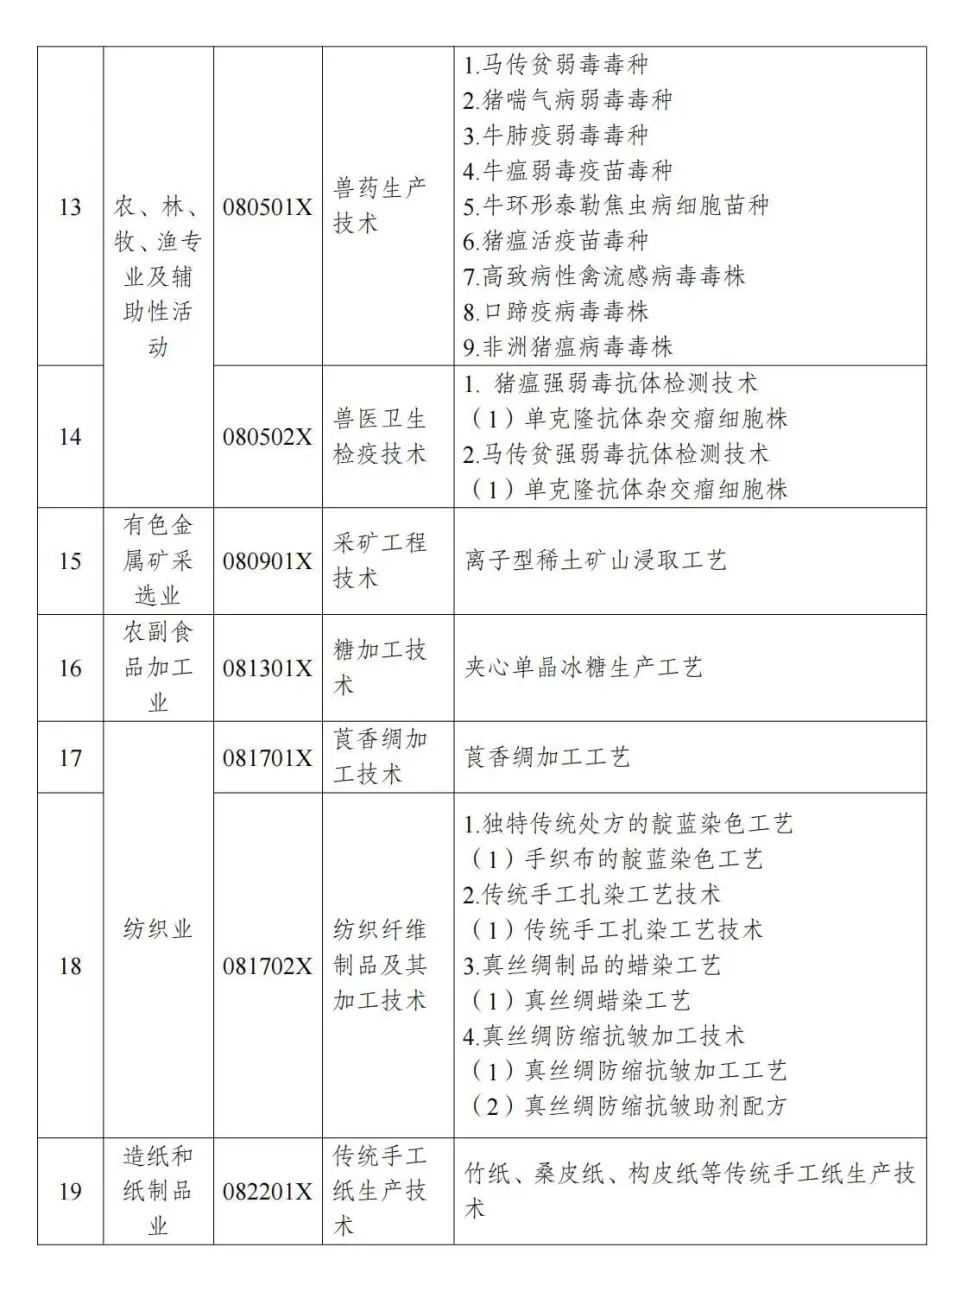 两部分公布《中国制止出口限制出口技术目录》 第7张图片